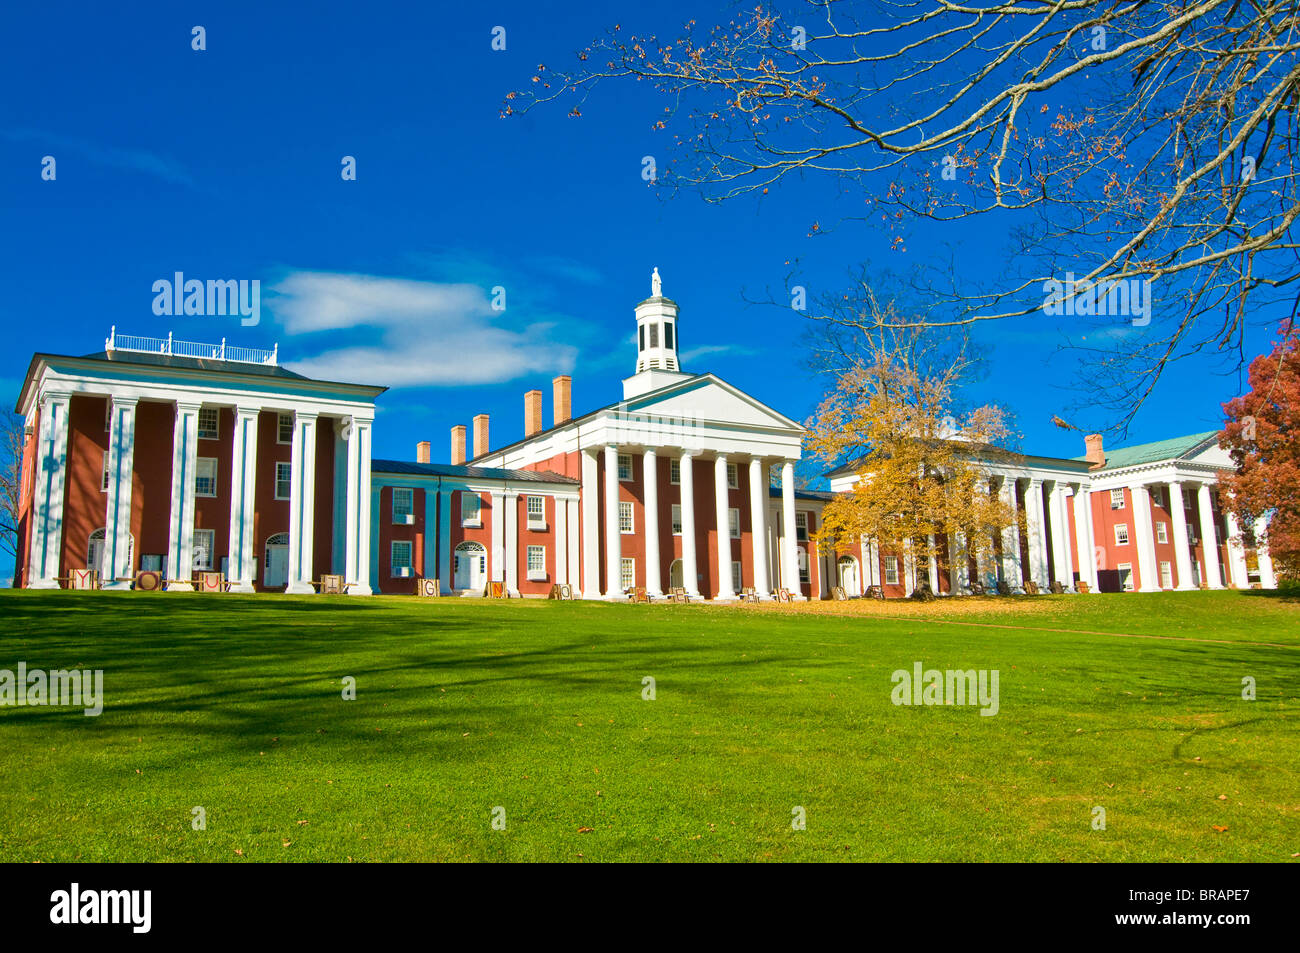 Bâtiments coloniaux, partie de l'École militaire de Lexington, Virginia, États-Unis d'Amérique, Amérique du Nord Banque D'Images